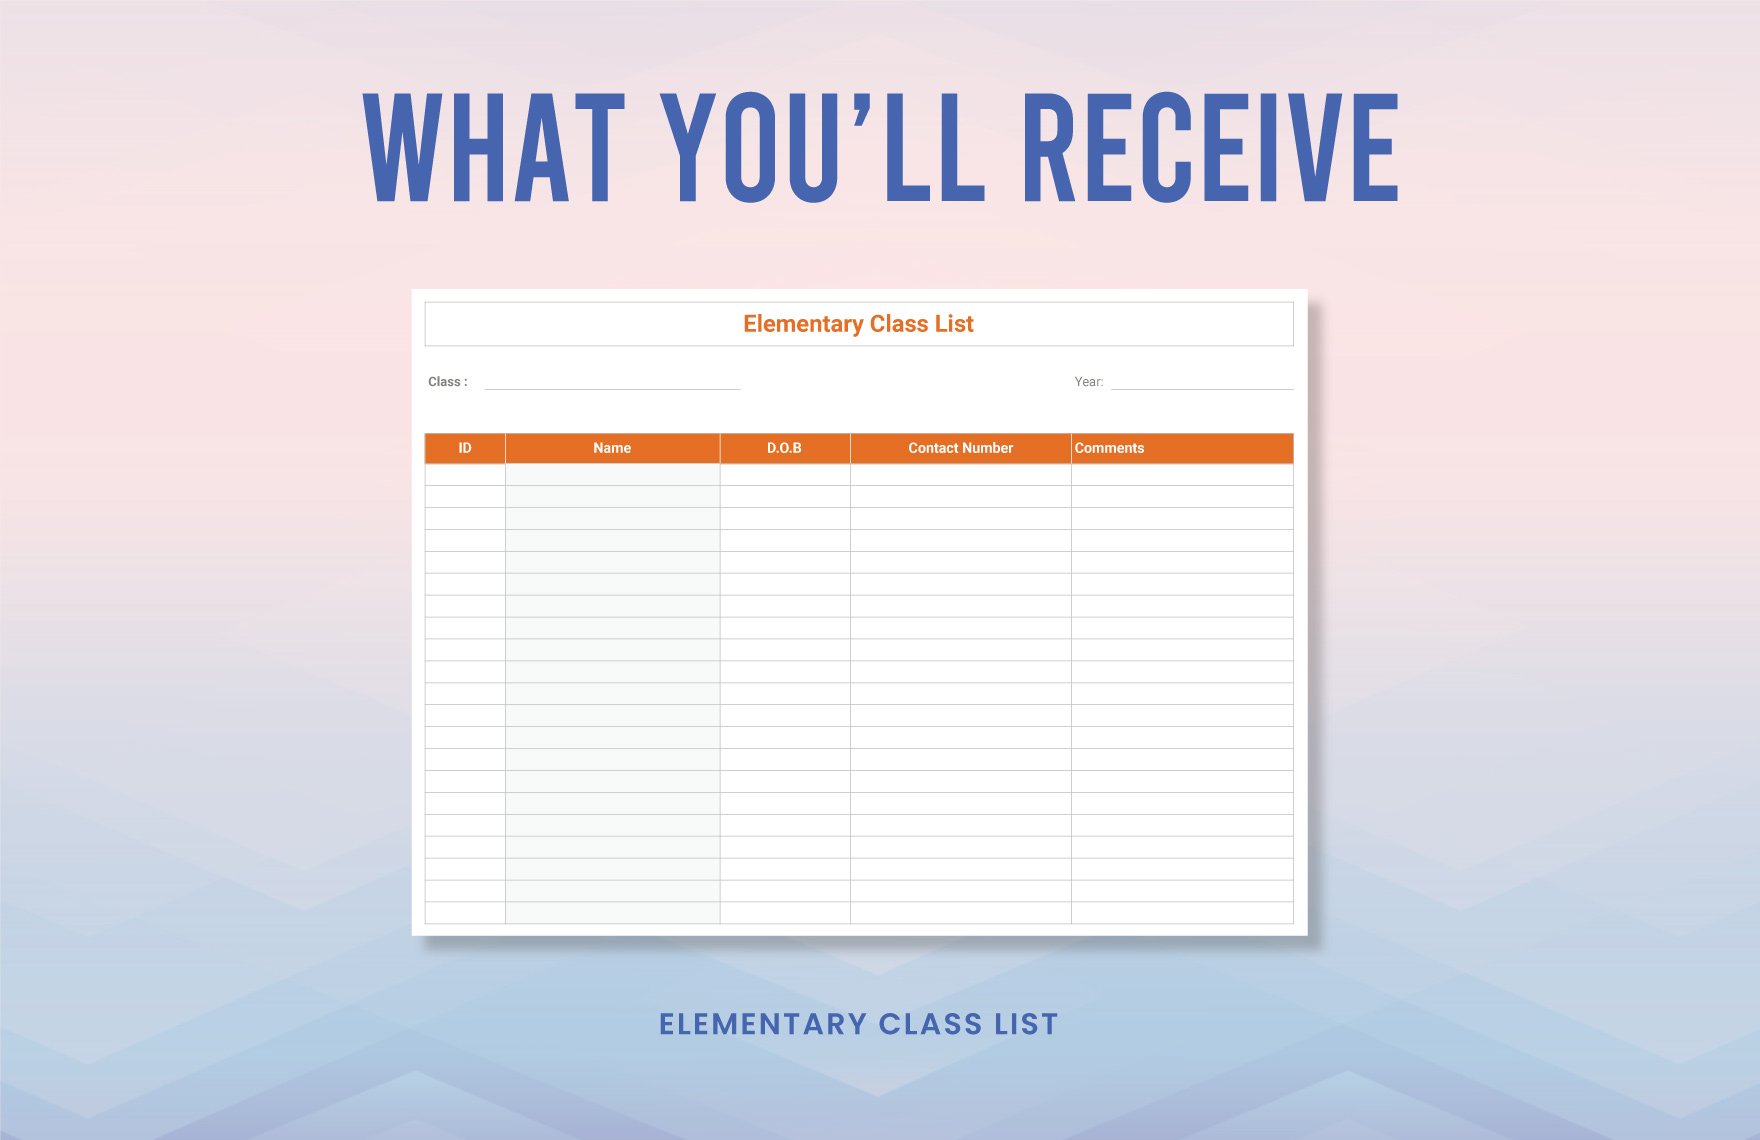 Elementary Class List Template